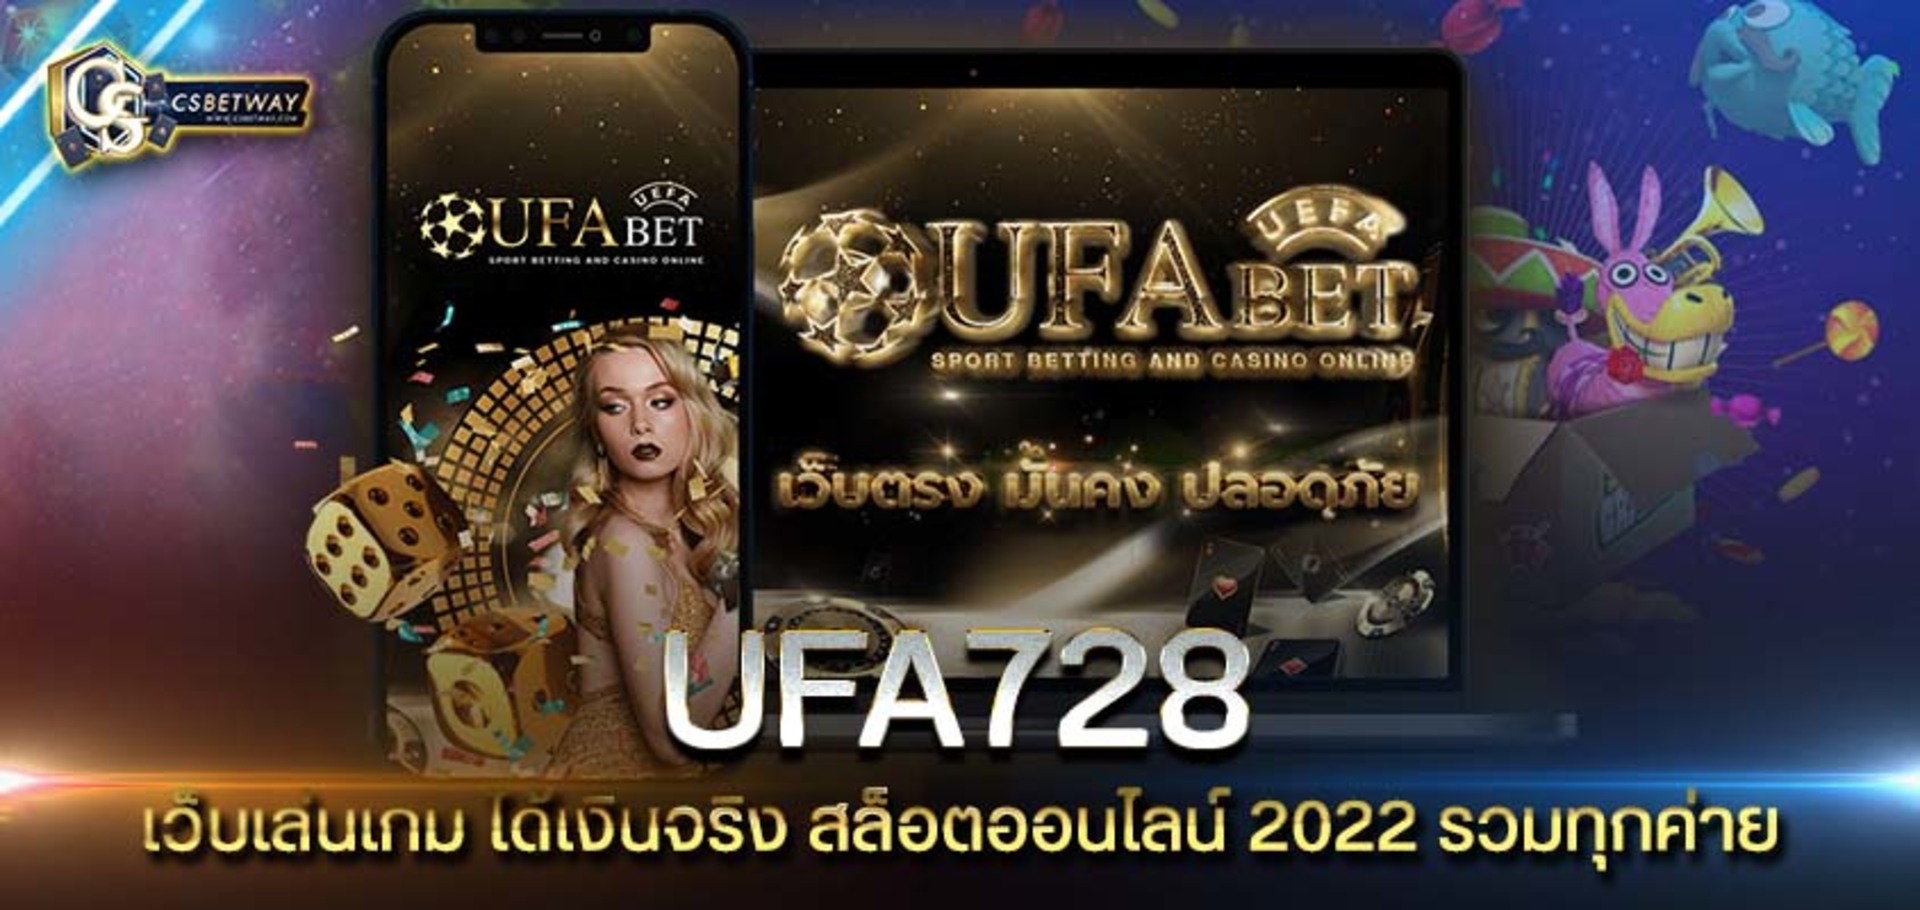 ufa728 เว็บเล่นเกม ได้เงินจริง สล็อตออนไลน์ 2022 รวมทุกค่าย